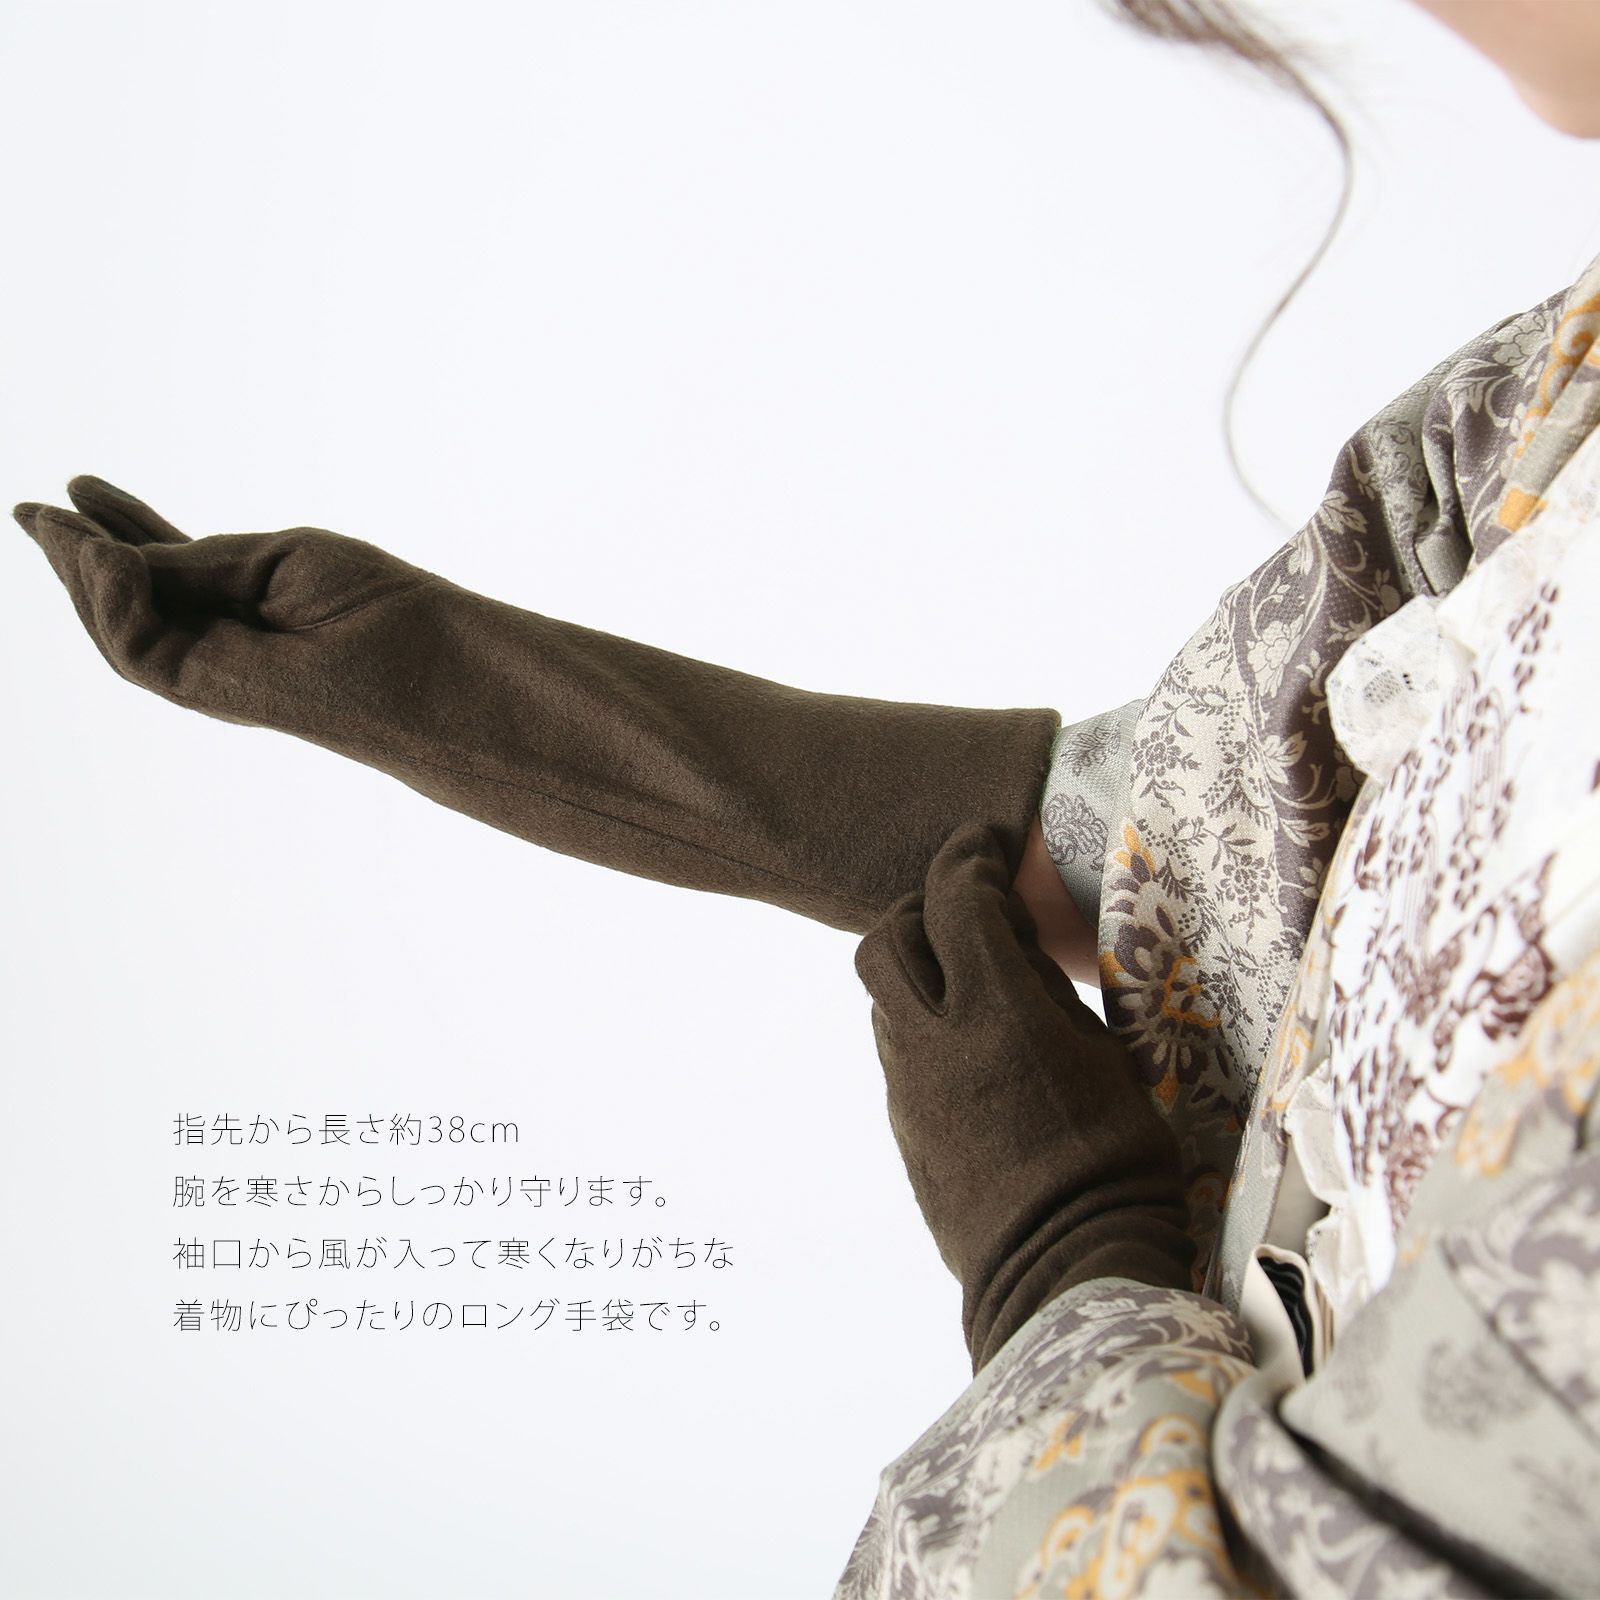 袴姿の防寒対策にロング手袋